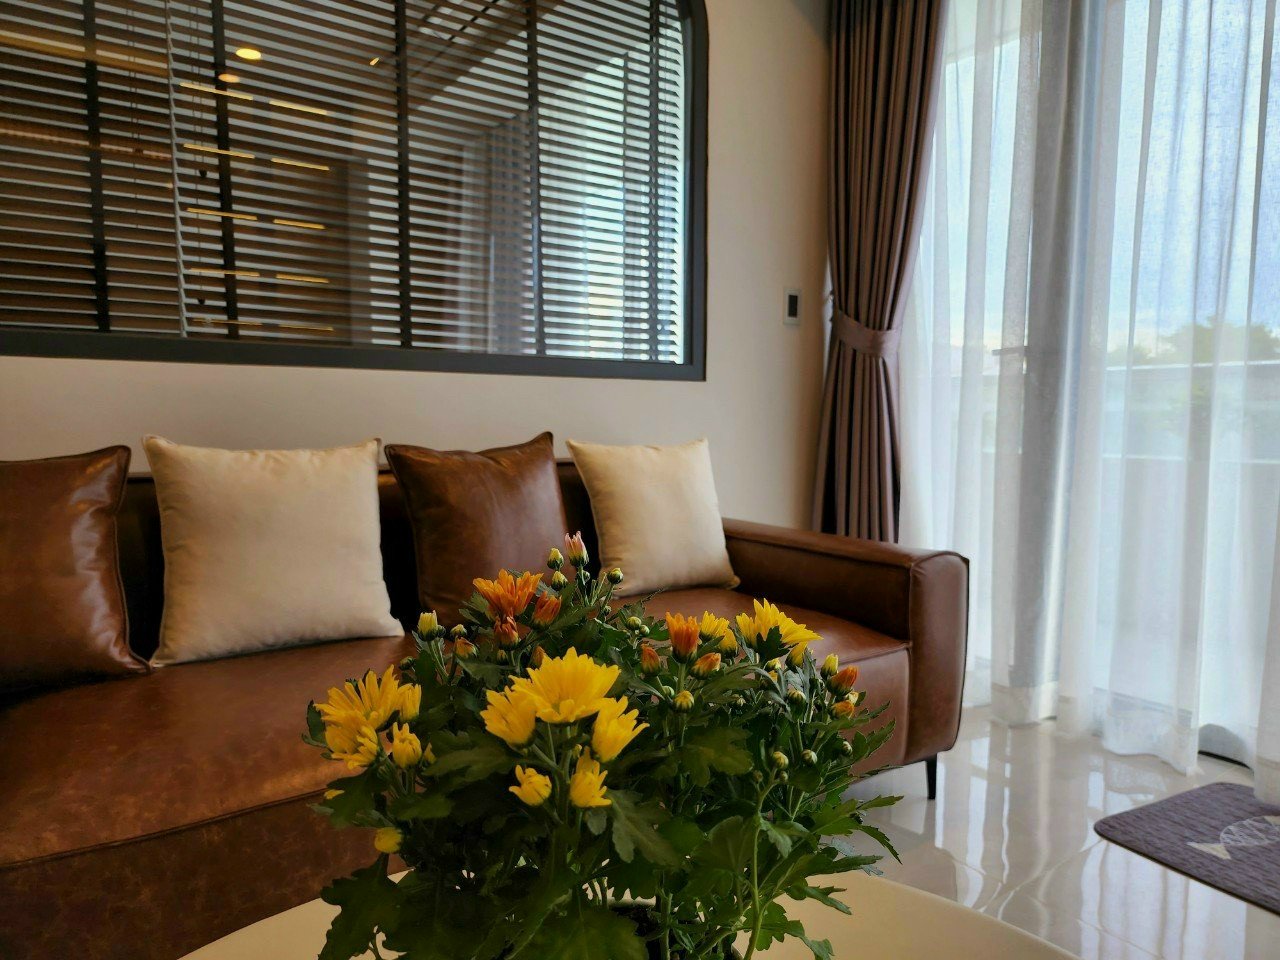 Bán căn hộ Garden Court 2, Phú Mỹ Hưng, nhà mới hoàn toàn, siêu đẹp, Dt 142m2. LH 078 825 3939